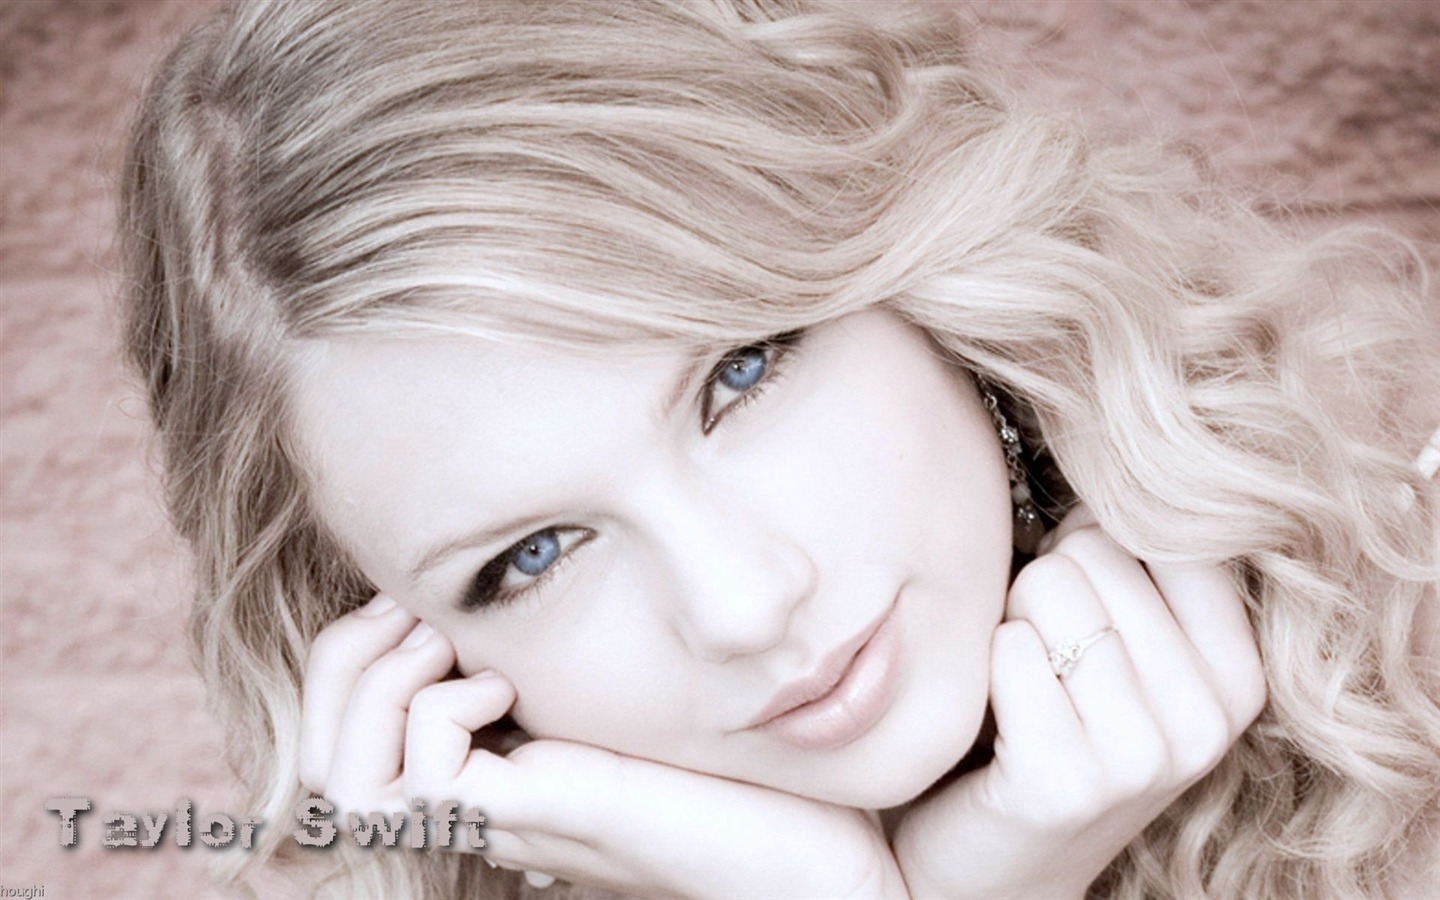 Taylor Swift beau fond d'écran #3 - 1440x900